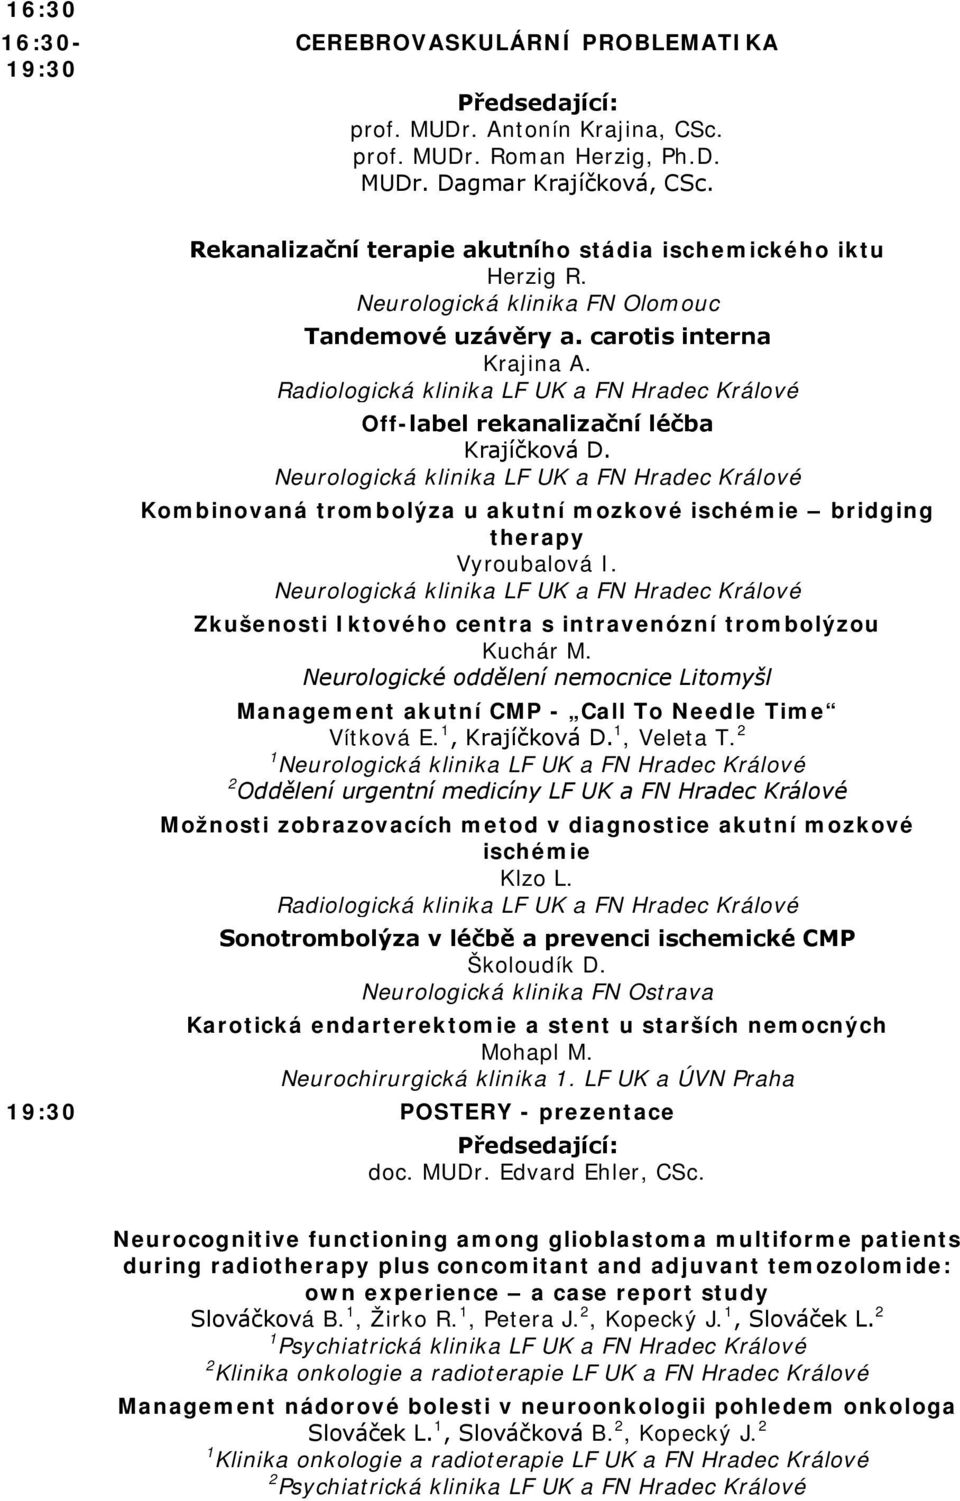 Radiologická klinika LF UK a FN Hradec Králové Off-label rekanalizační léčba Krajíčková D. Kombinovaná trombolýza u akutní mozkové ischémie bridging therapy Vyroubalová I.